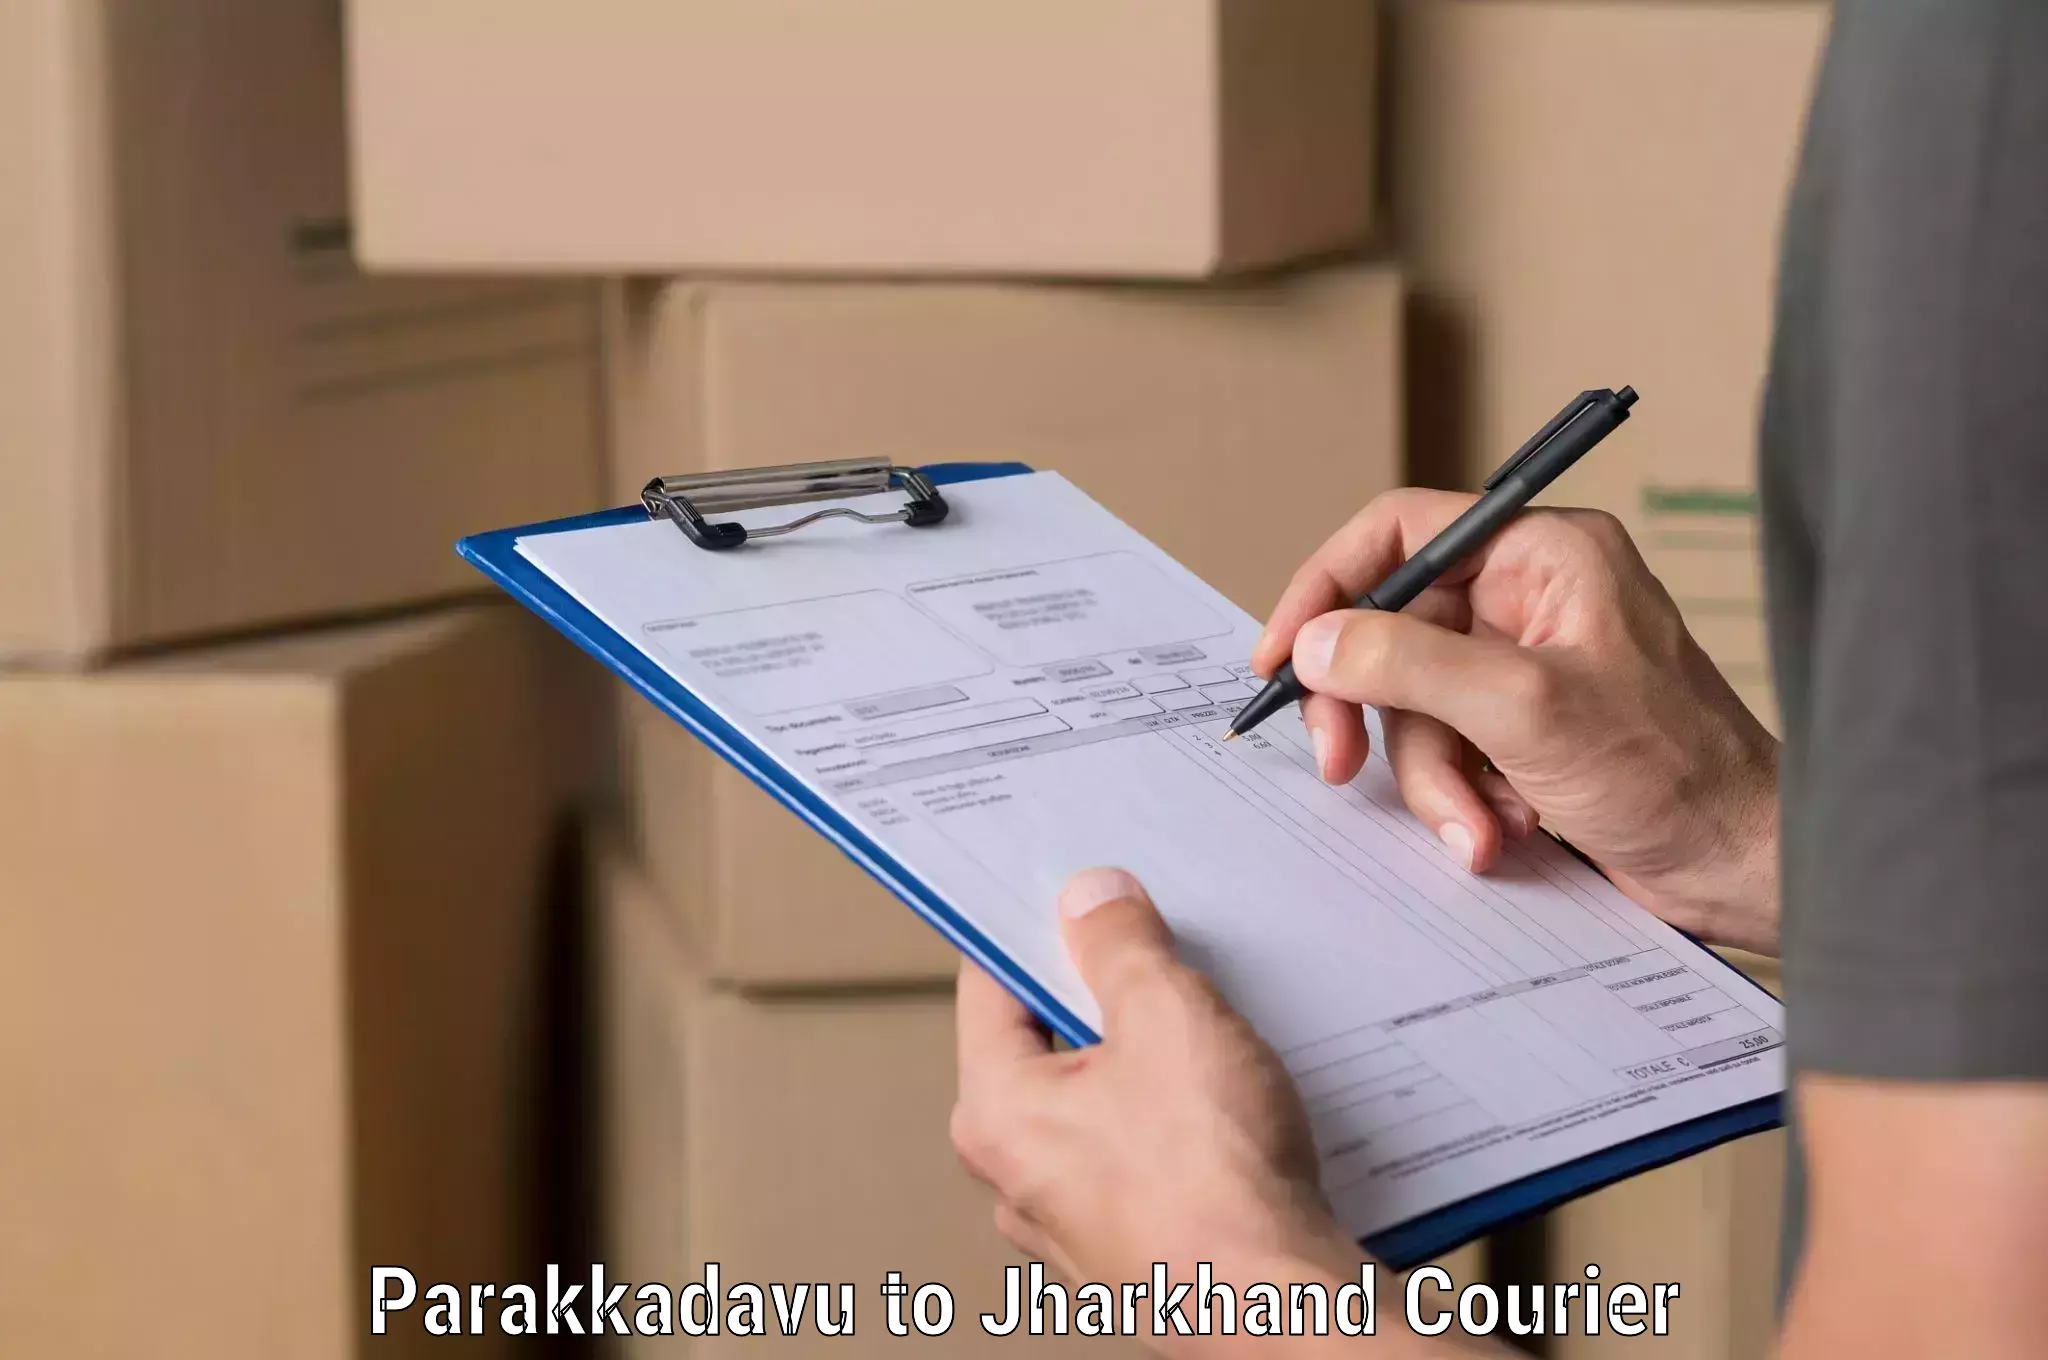 Flexible delivery schedules Parakkadavu to Gumia